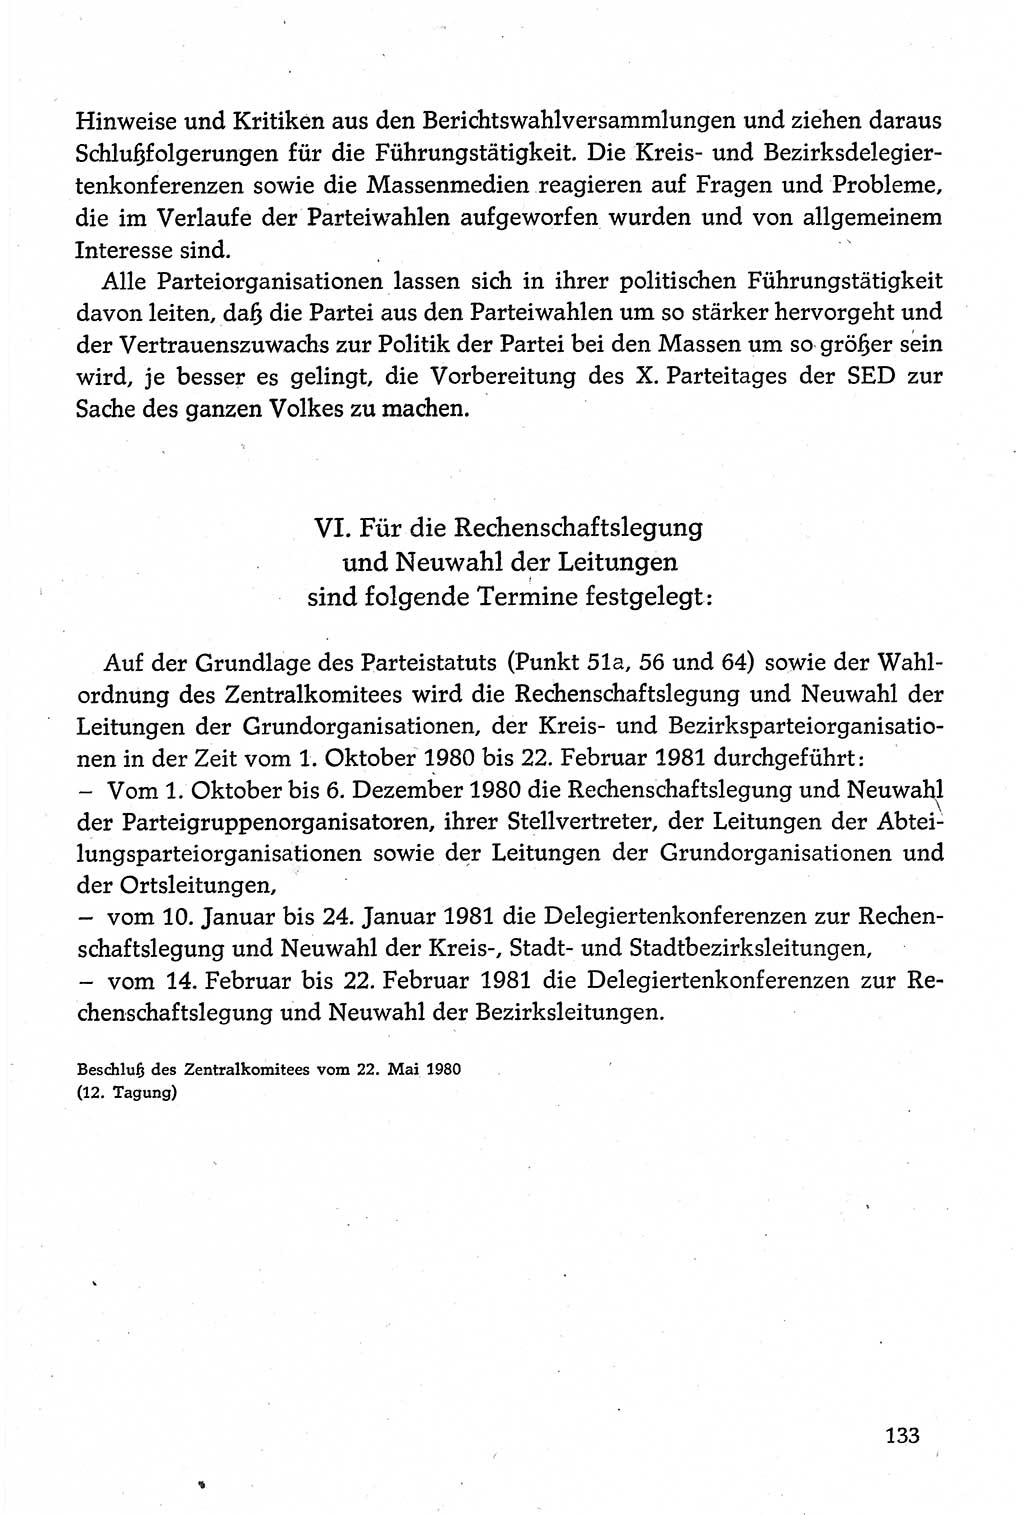 Dokumente der Sozialistischen Einheitspartei Deutschlands (SED) [Deutsche Demokratische Republik (DDR)] 1980-1981, Seite 133 (Dok. SED DDR 1980-1981, S. 133)